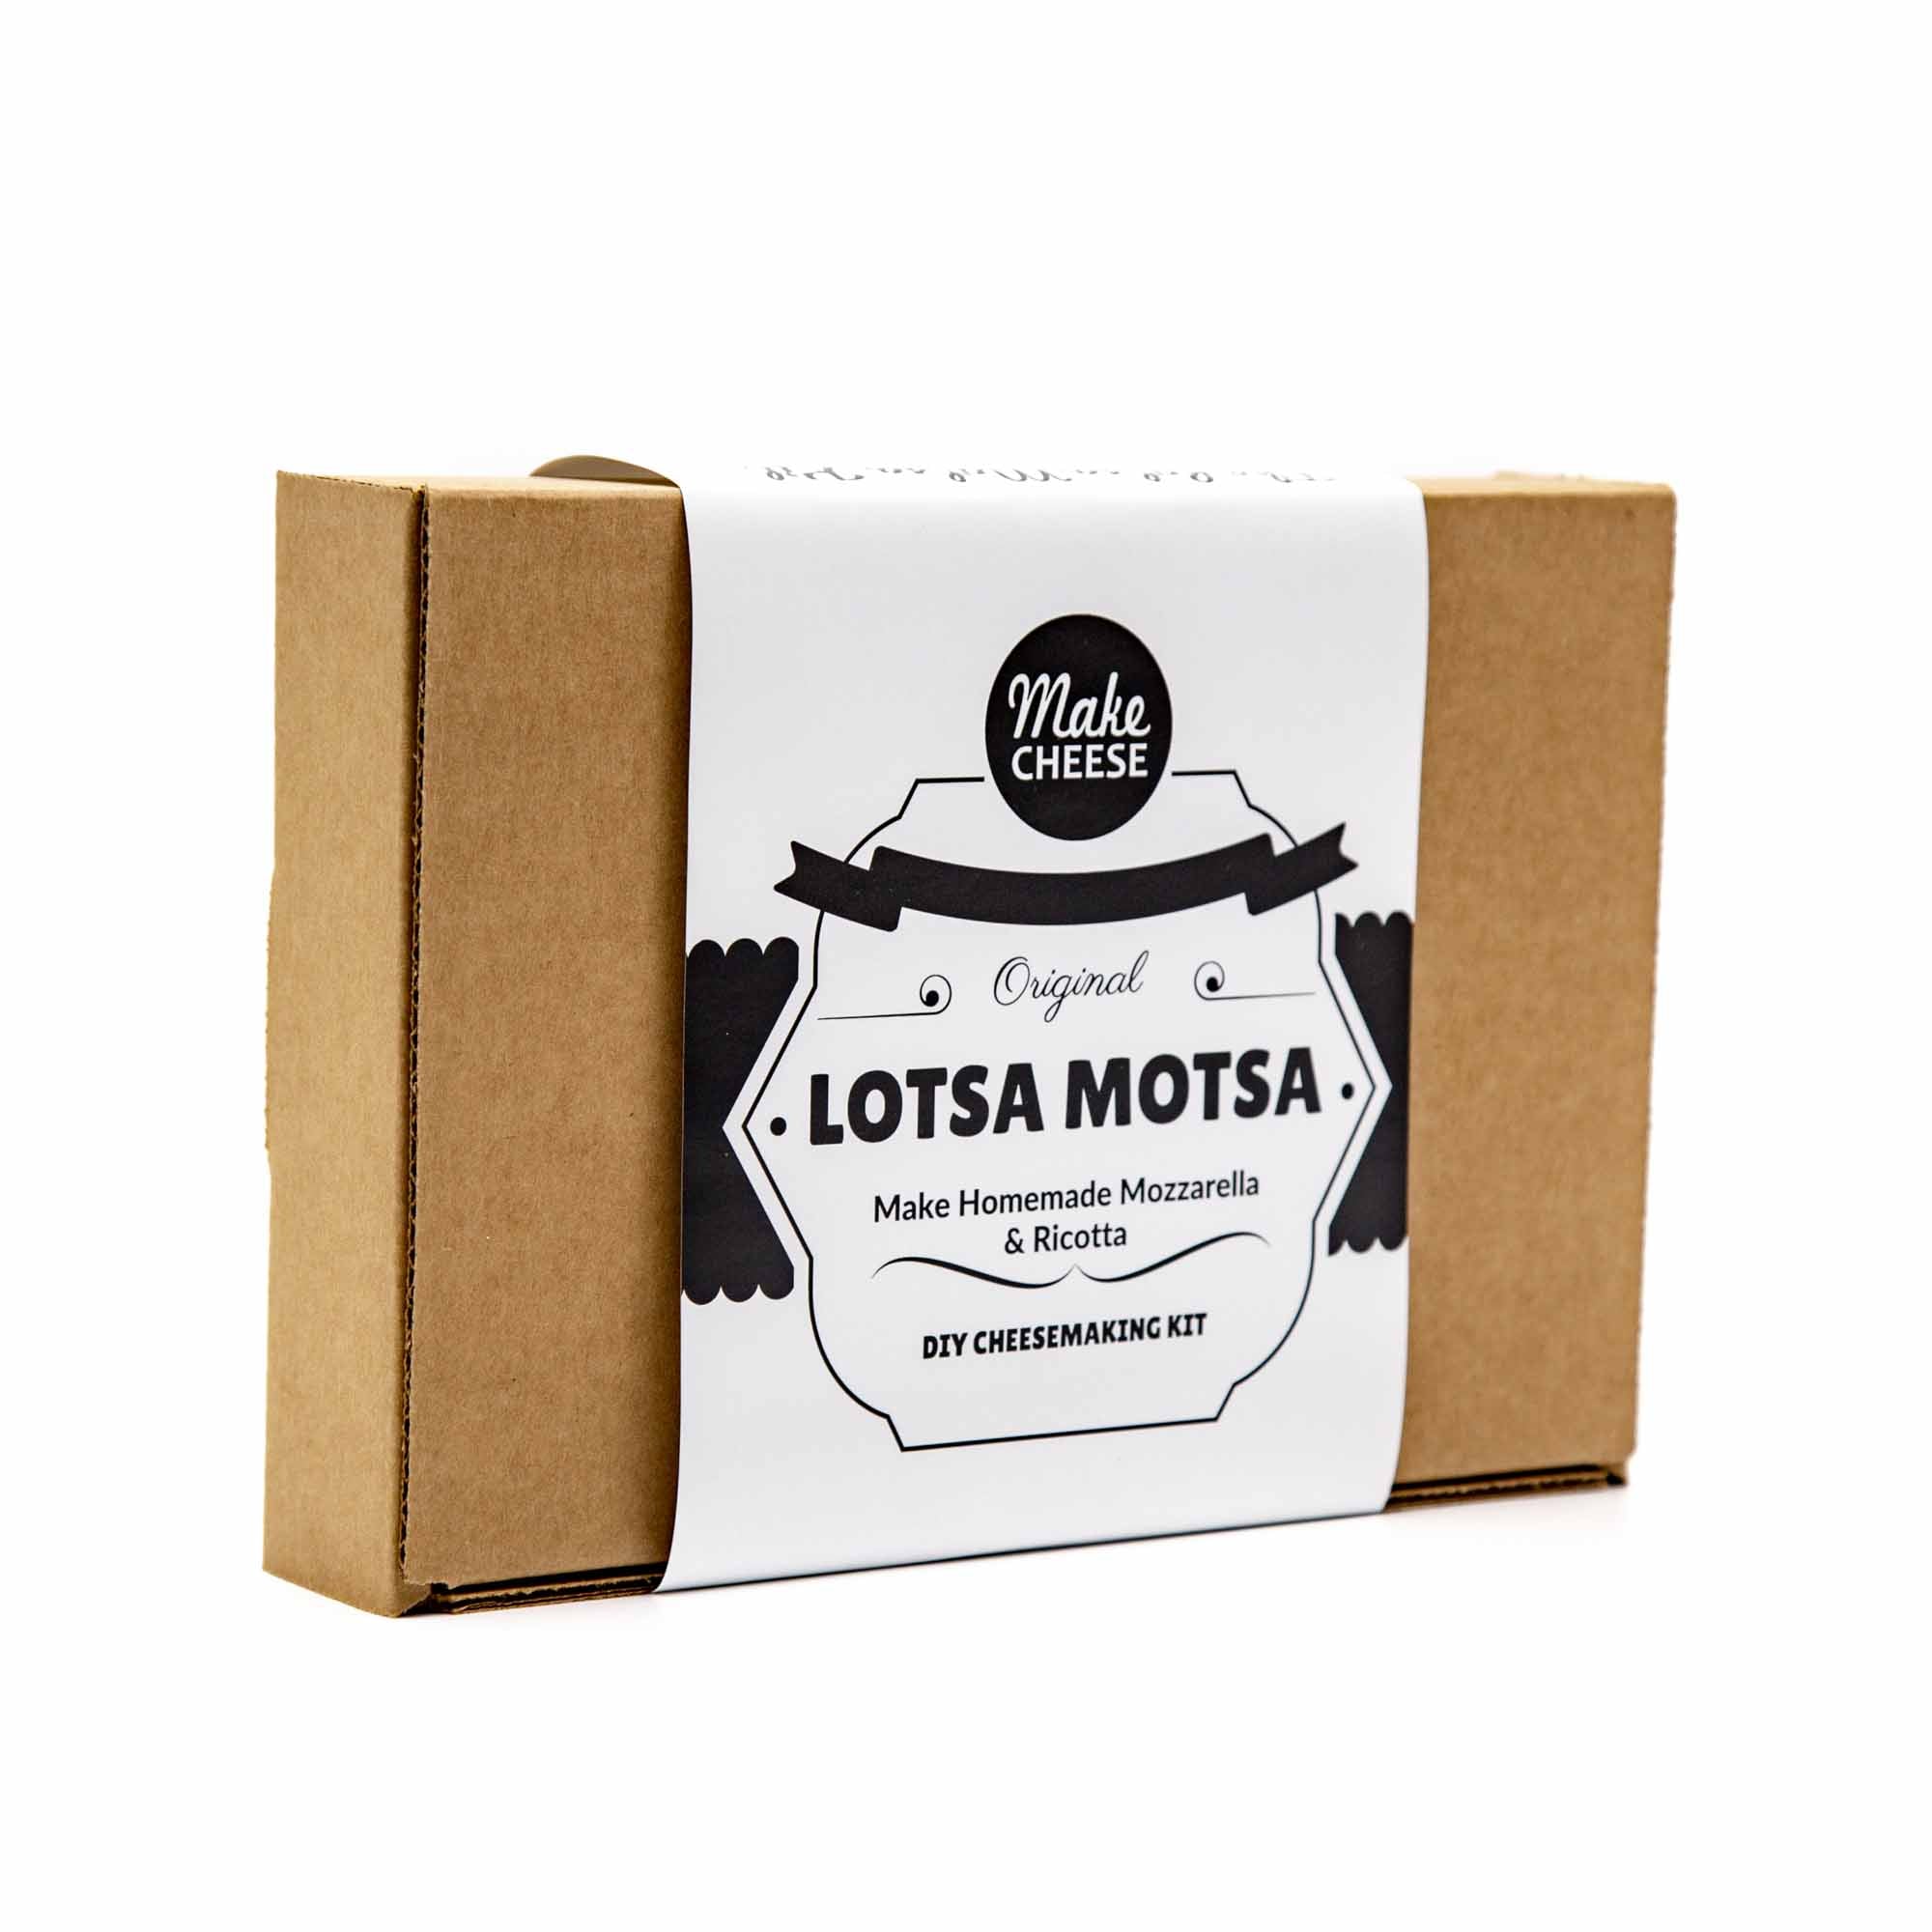 Lotsa Motsa Cheese Kit - Mortise And Tenon